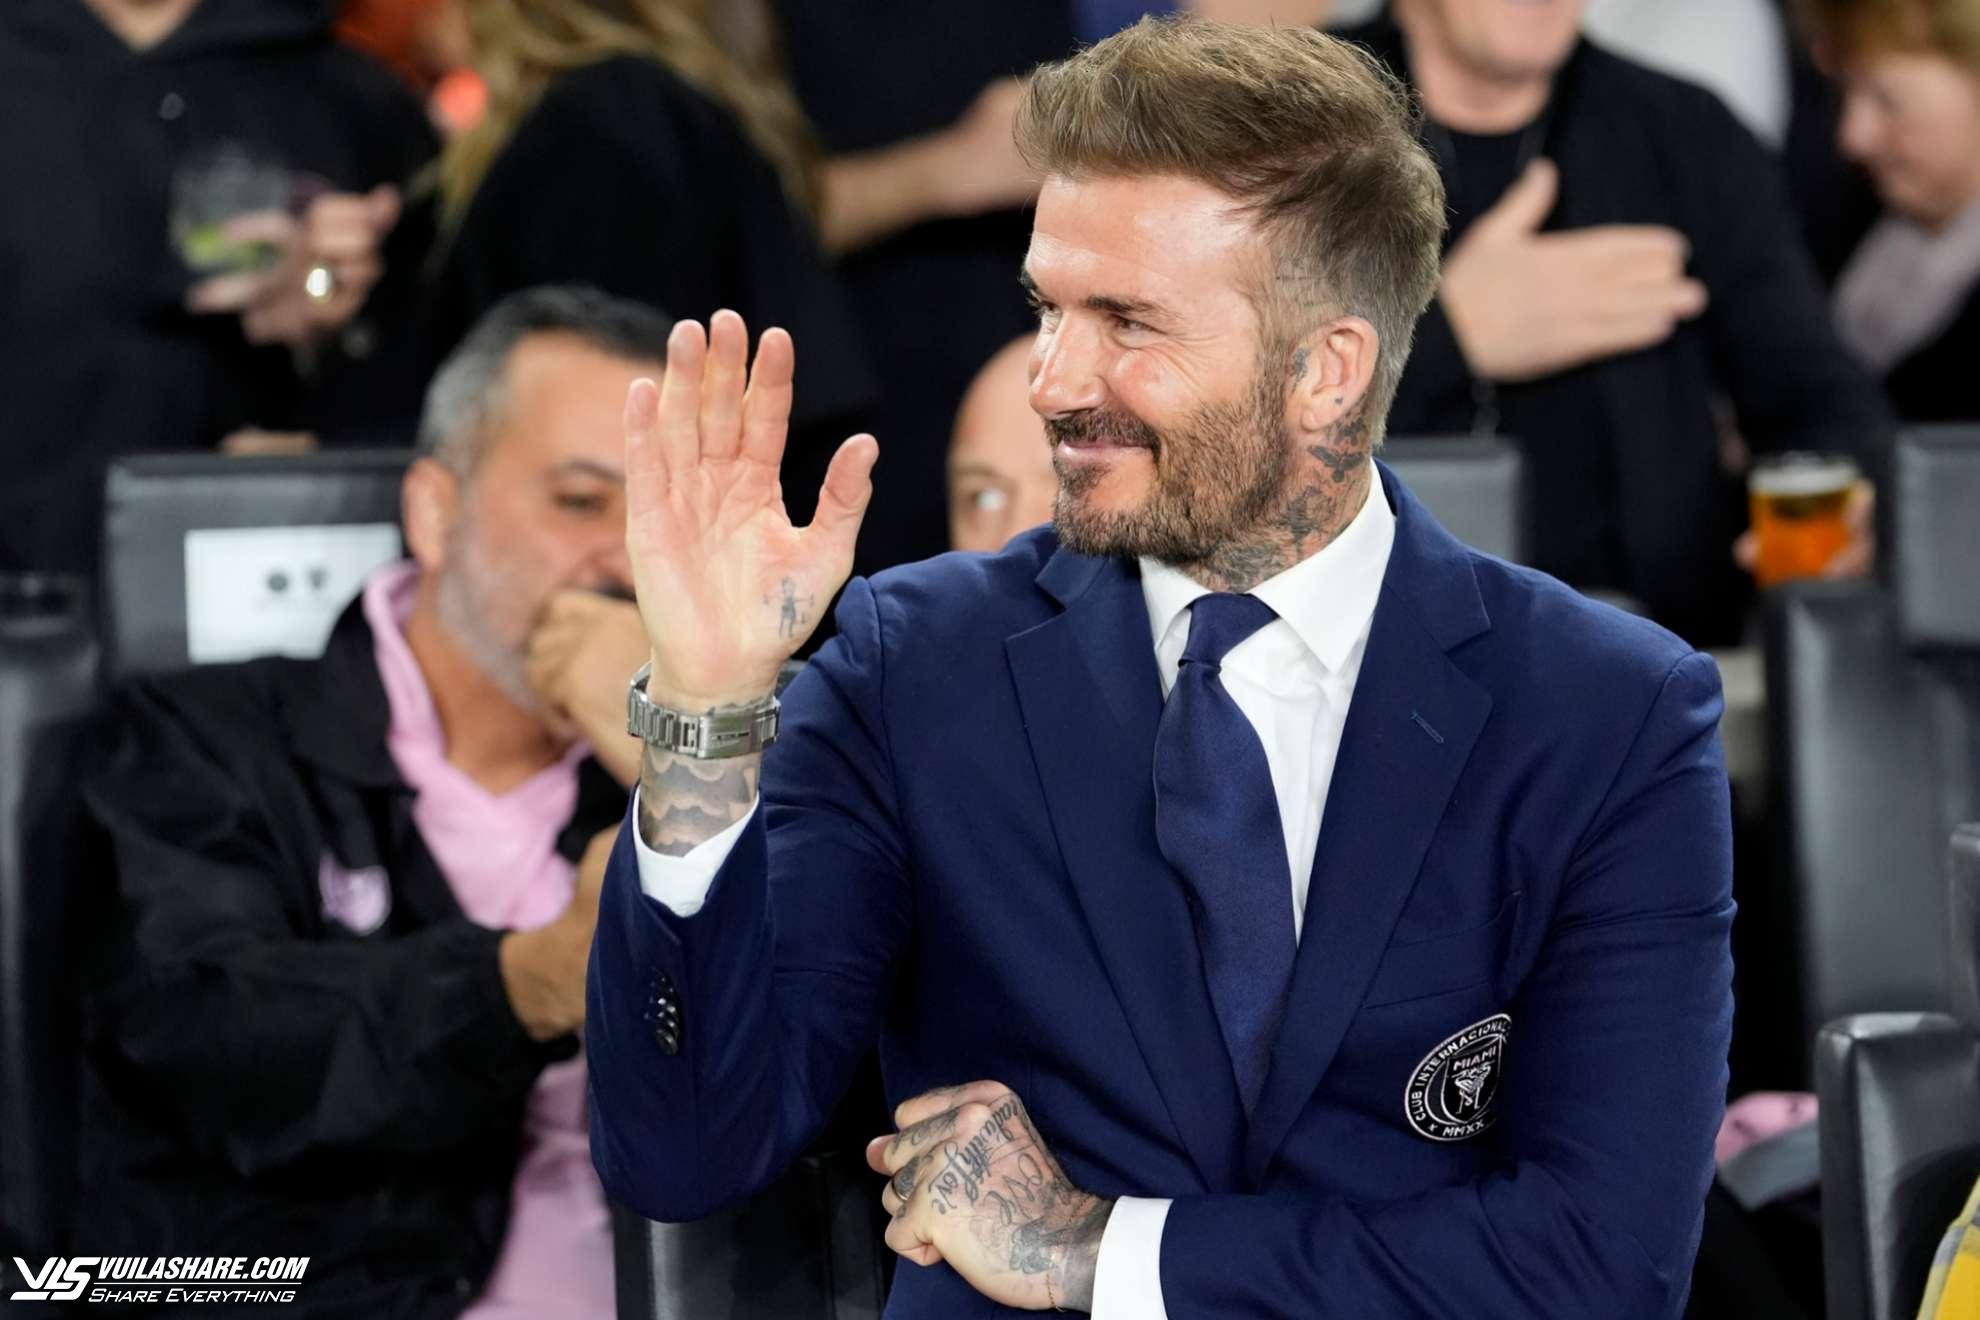 David Beckham gia nhập cuộc sống bình dị cùng Messi tại Miami, đi săn hàng giảm giá- Ảnh 2.